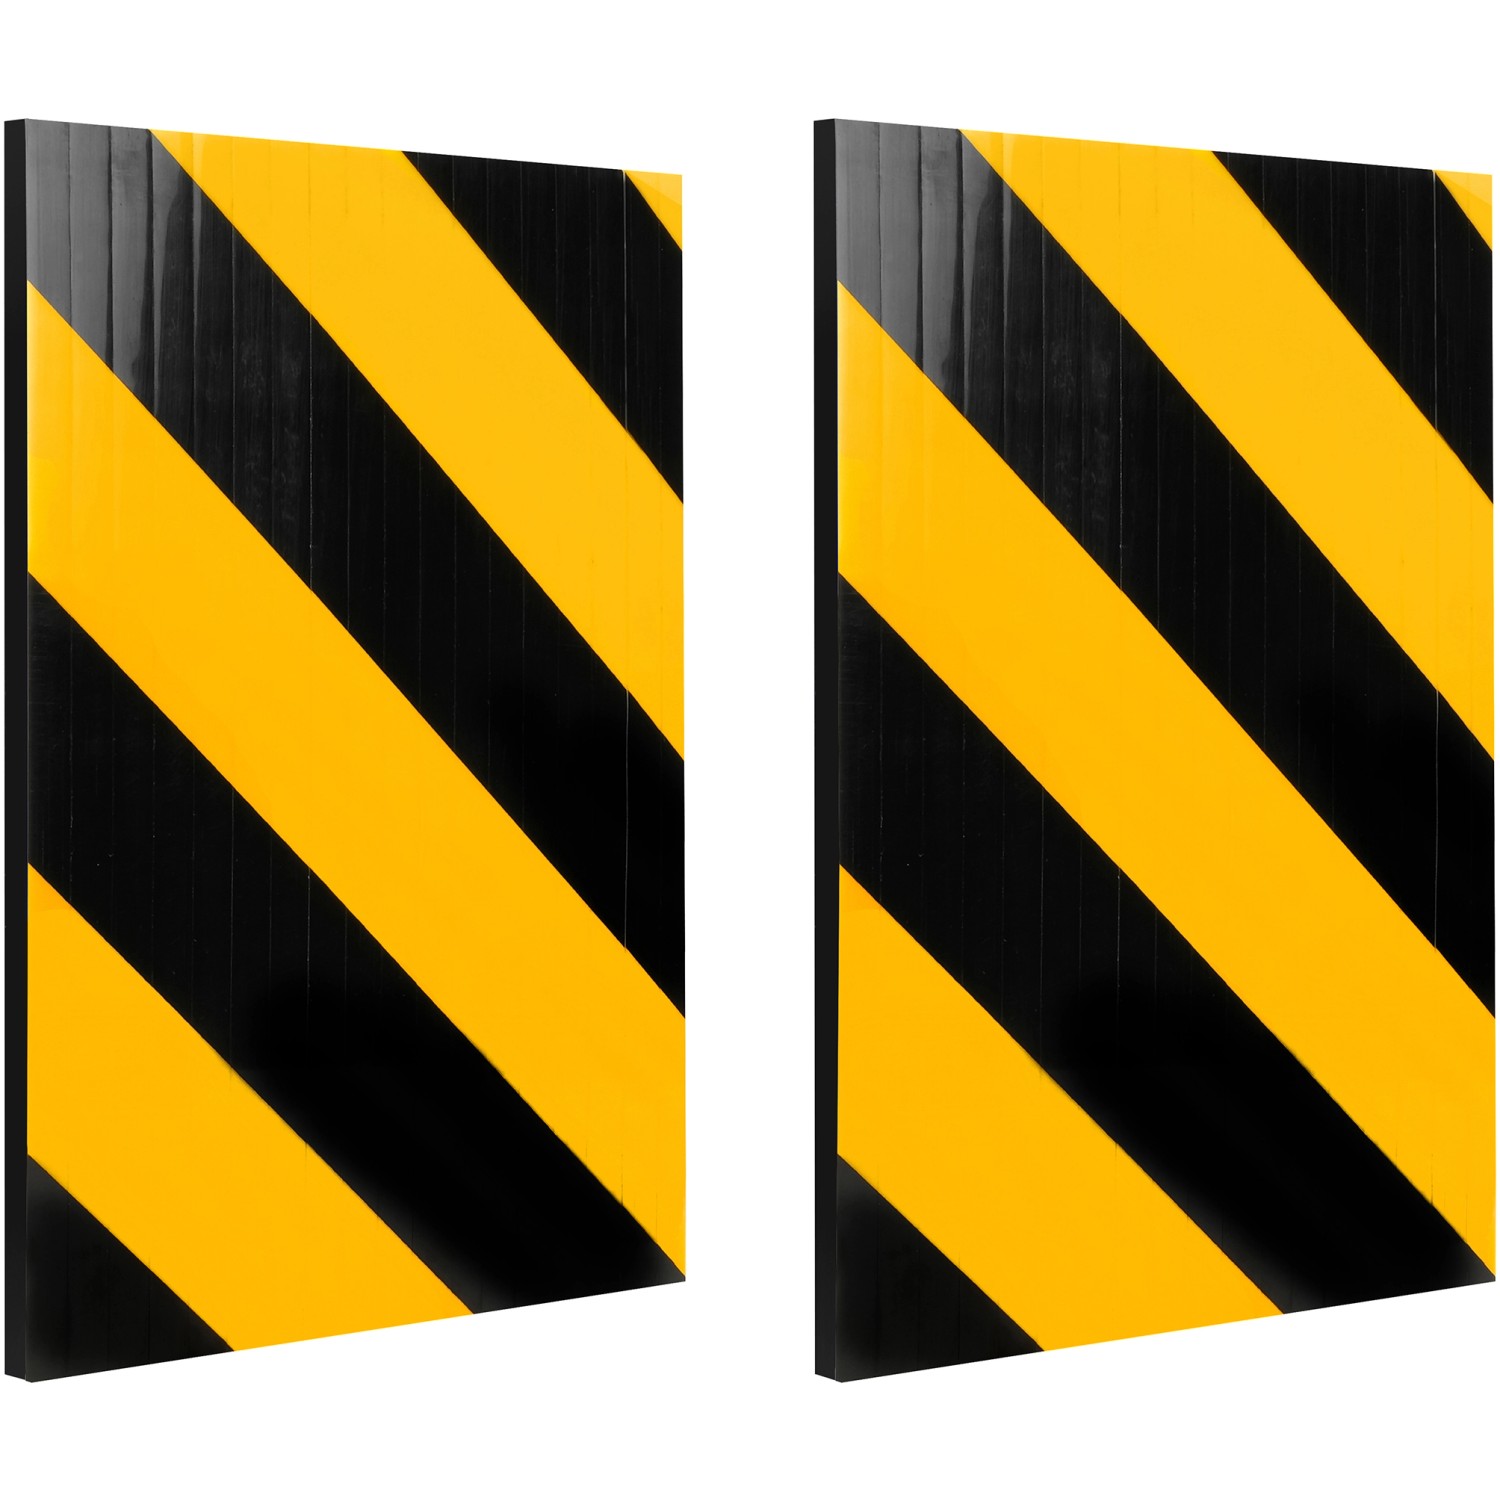 Apa Garagen-Wandschutz 30 cm x 20 cm x 1 cm Schwarz-Gelb kaufen bei OBI